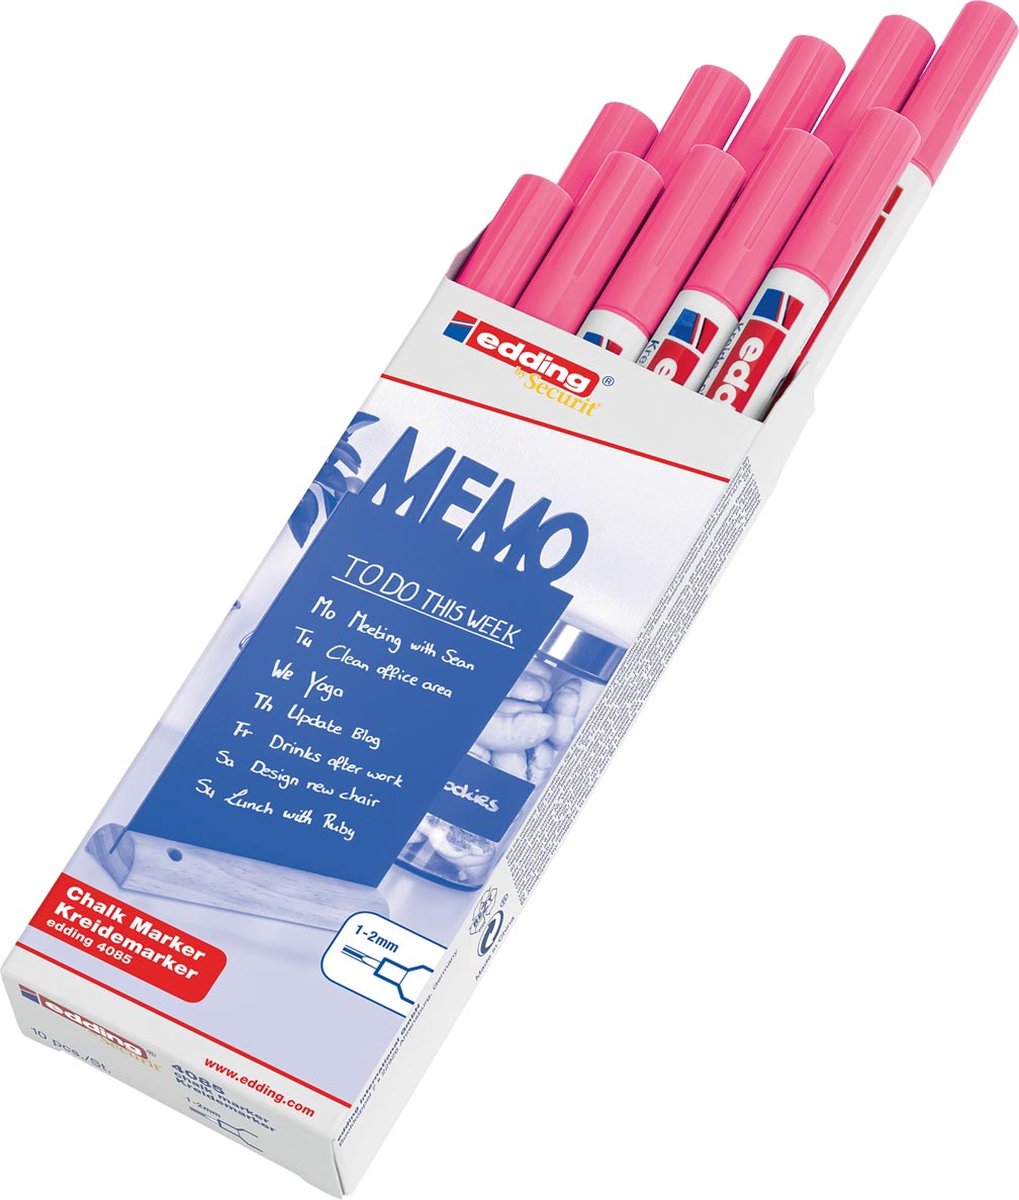 Krijtstift edding by Securit 4085 rond 1-2mm neon roze - 10 stuks - 10 stuks